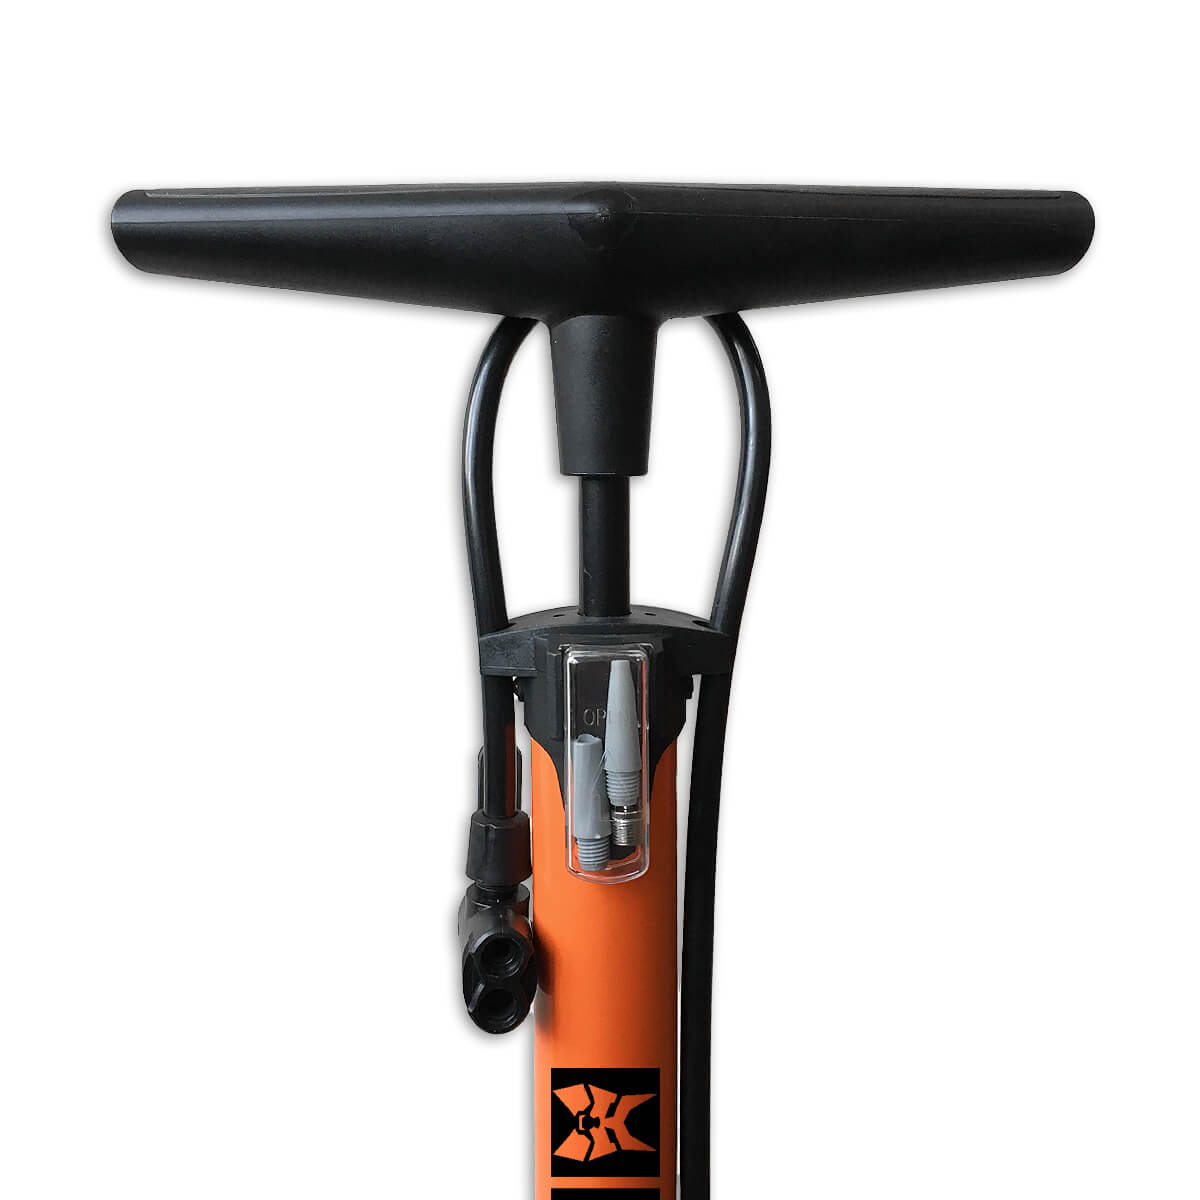 Pompa per biciclette con manometro a 6 bar arancione